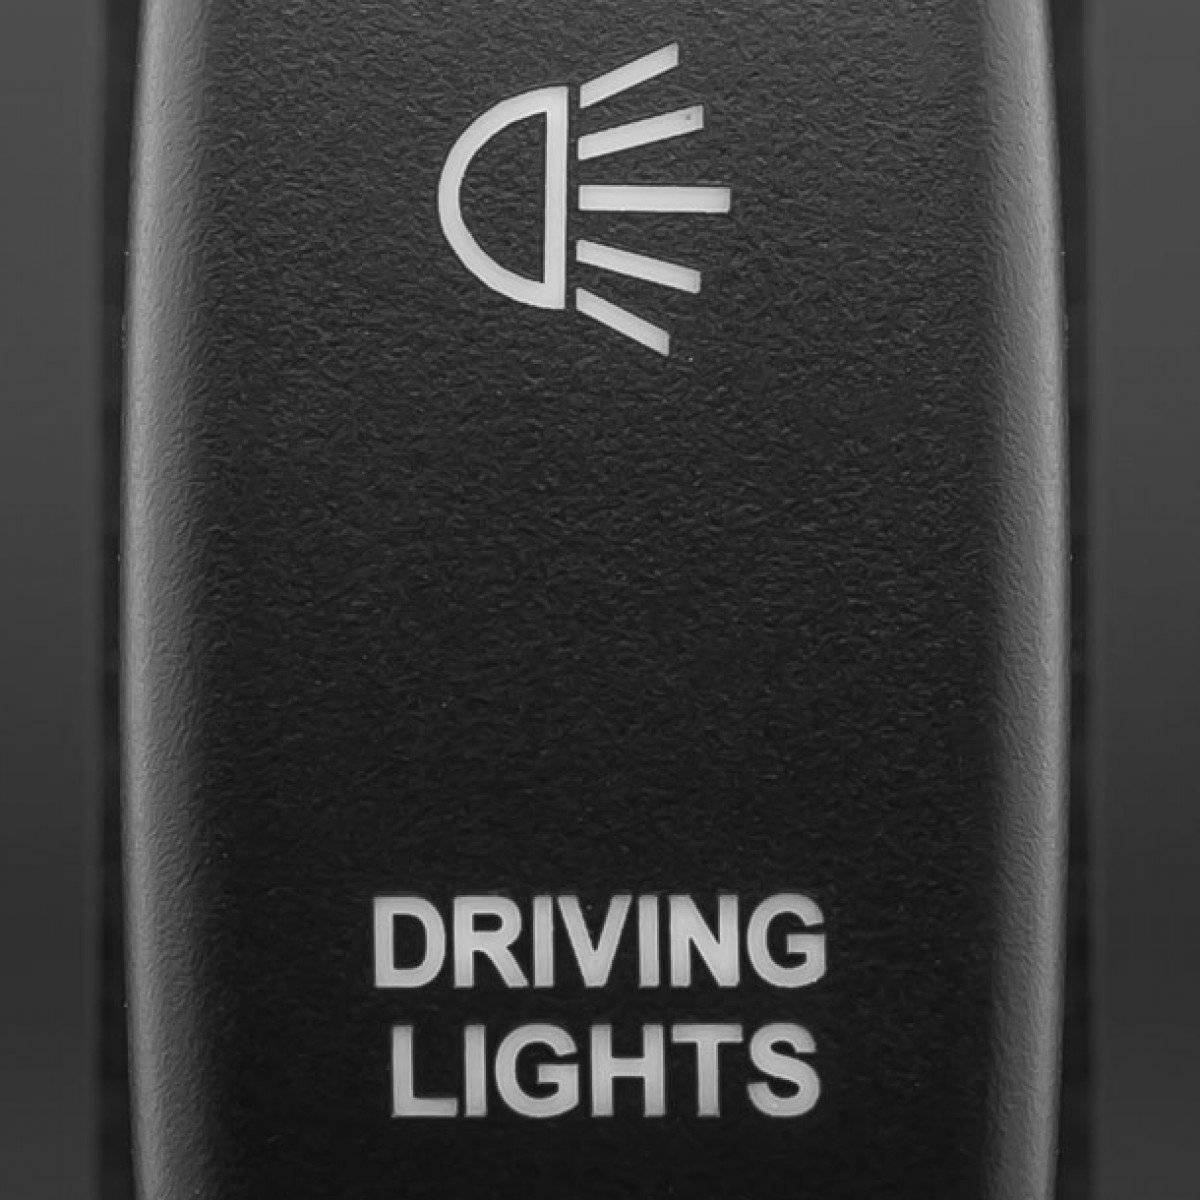 Stedi Switch - Driving Lights - Tall Type Push Switch to suit Mitsubishi | Stedi